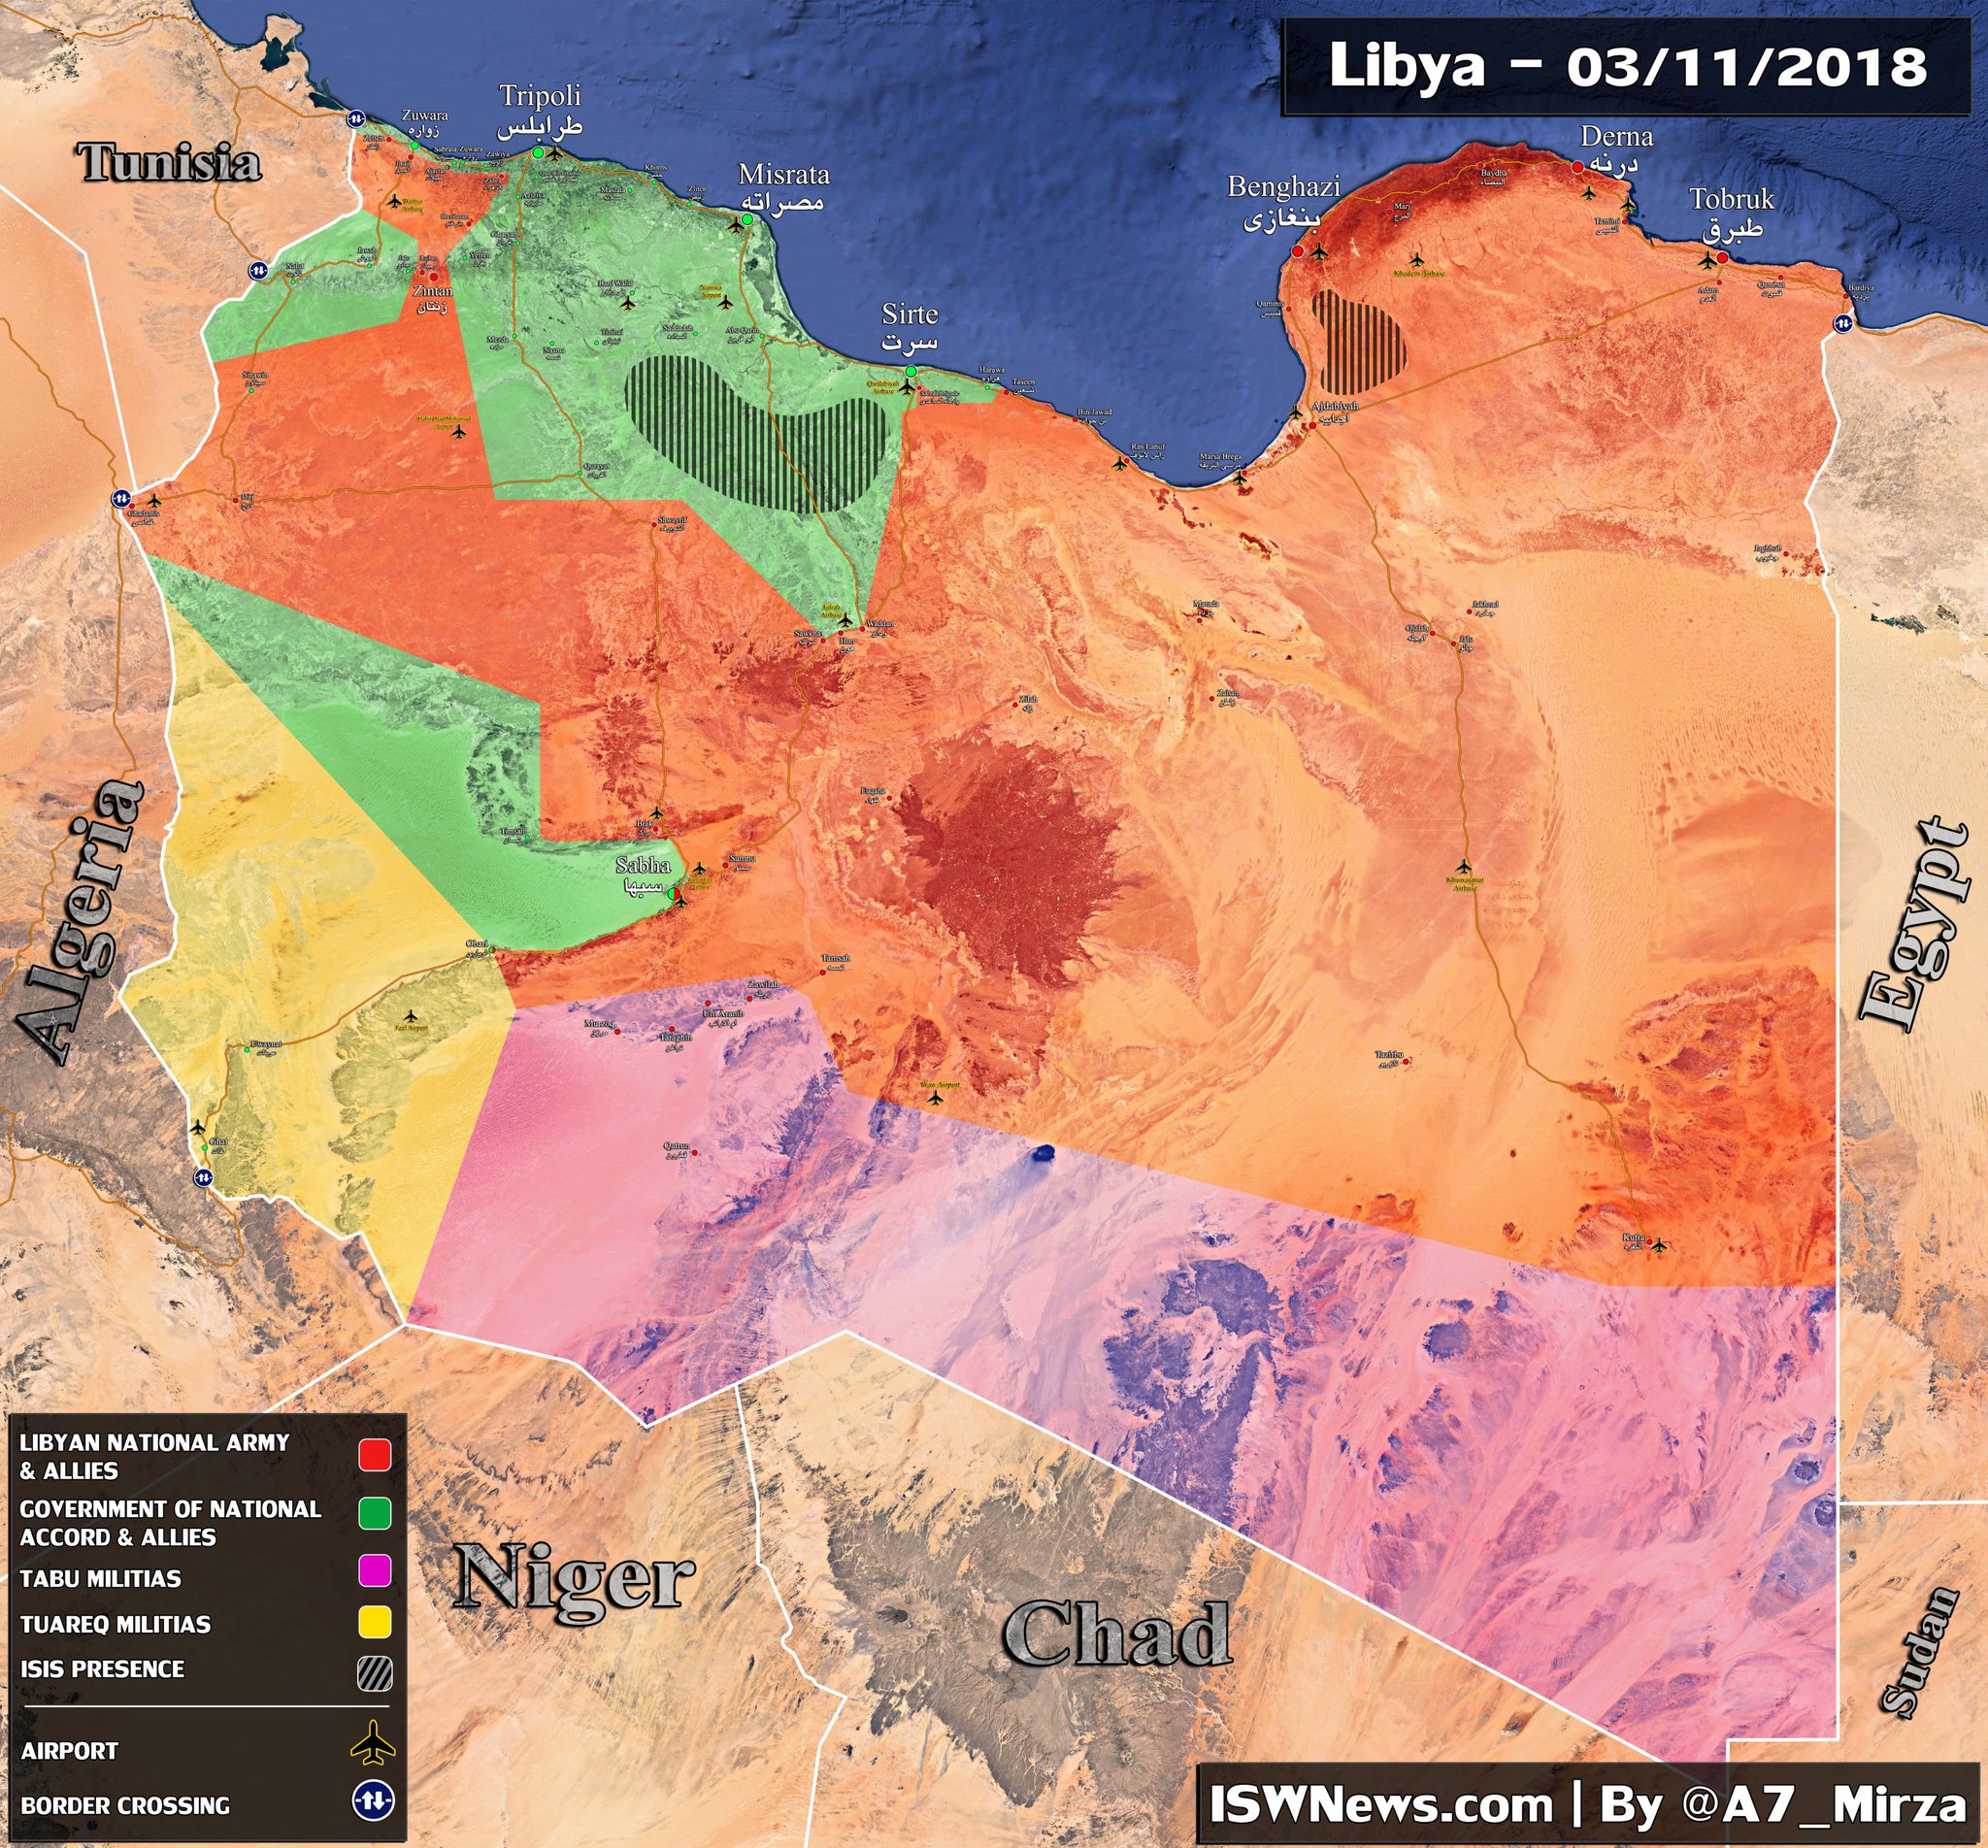 Aktuální vojenská situace v Libyi